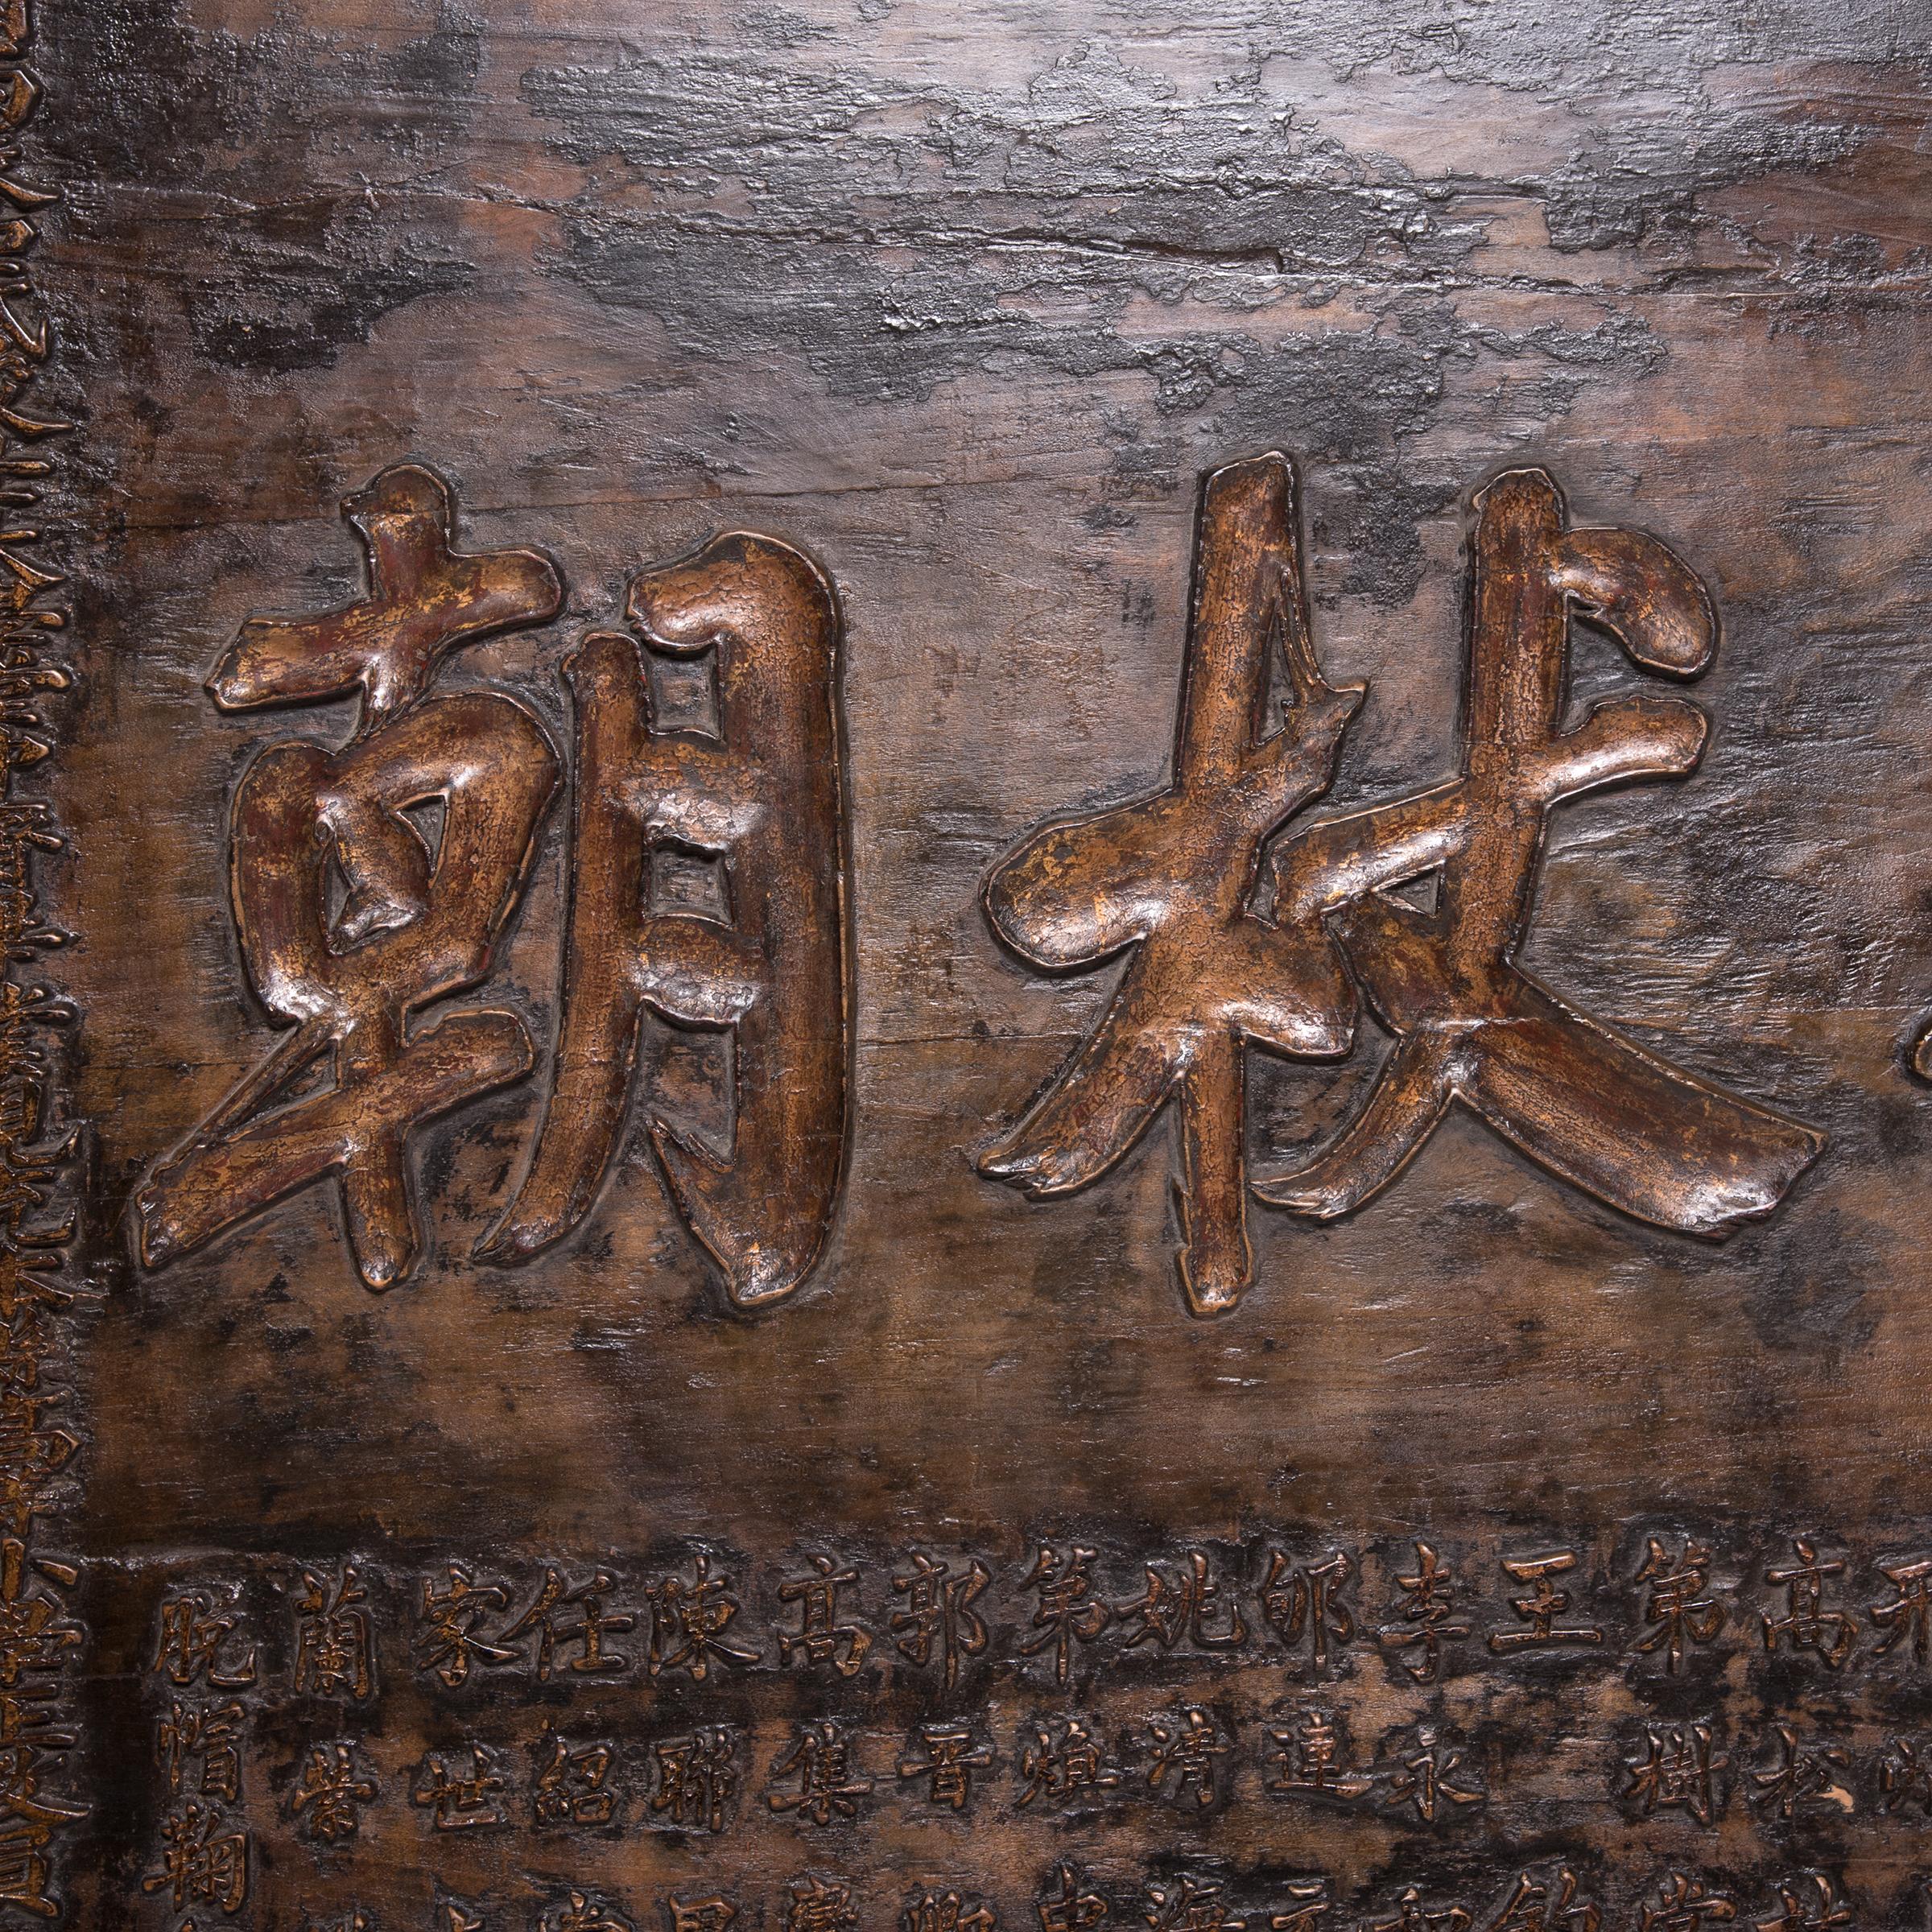 Ein nordchinesisches Ehrenzeichen aus dem 19. Jahrhundert, das einem geschätzten Gelehrten zu seinem 80. Die großen Buchstaben in der Mitte lauten (von rechts nach links): 